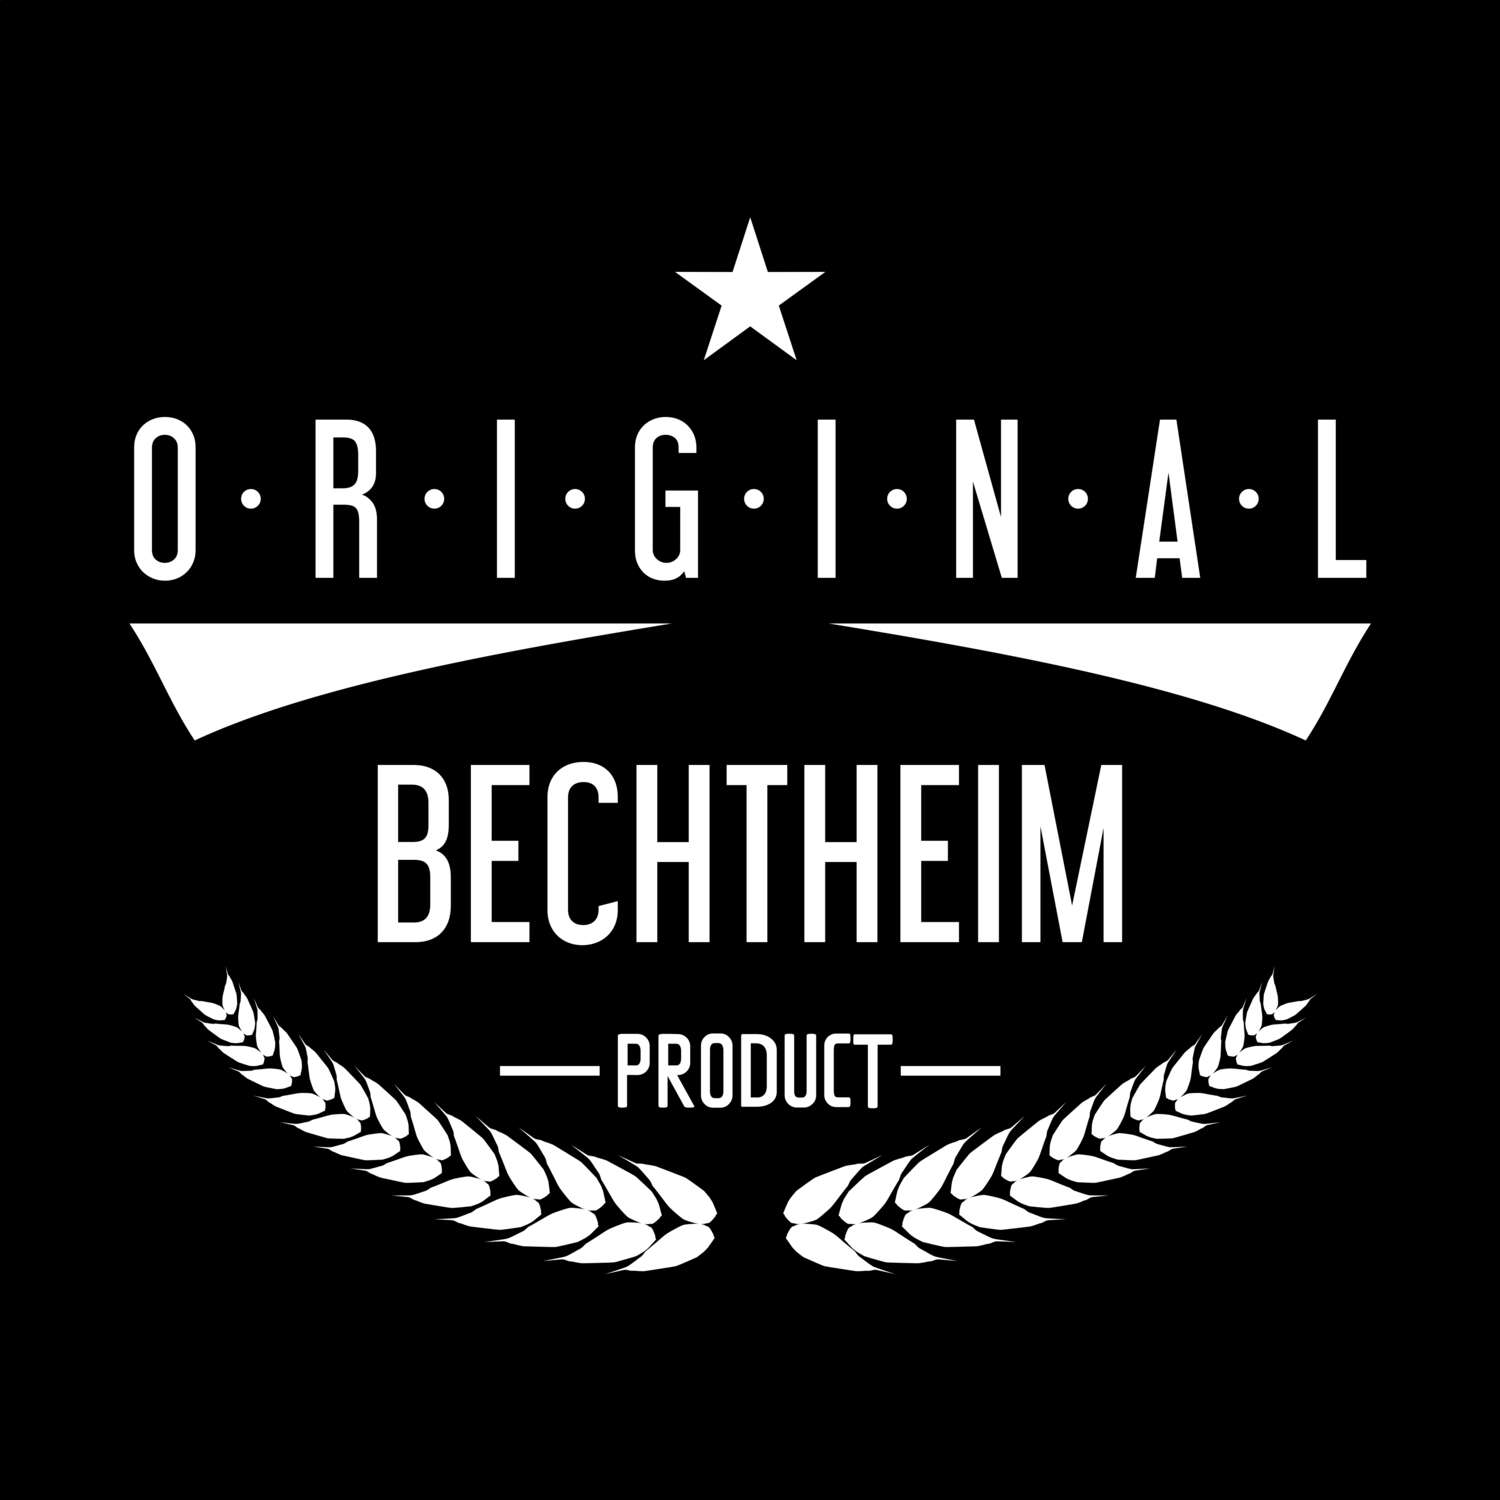 Bechtheim T-Shirt »Original Product«